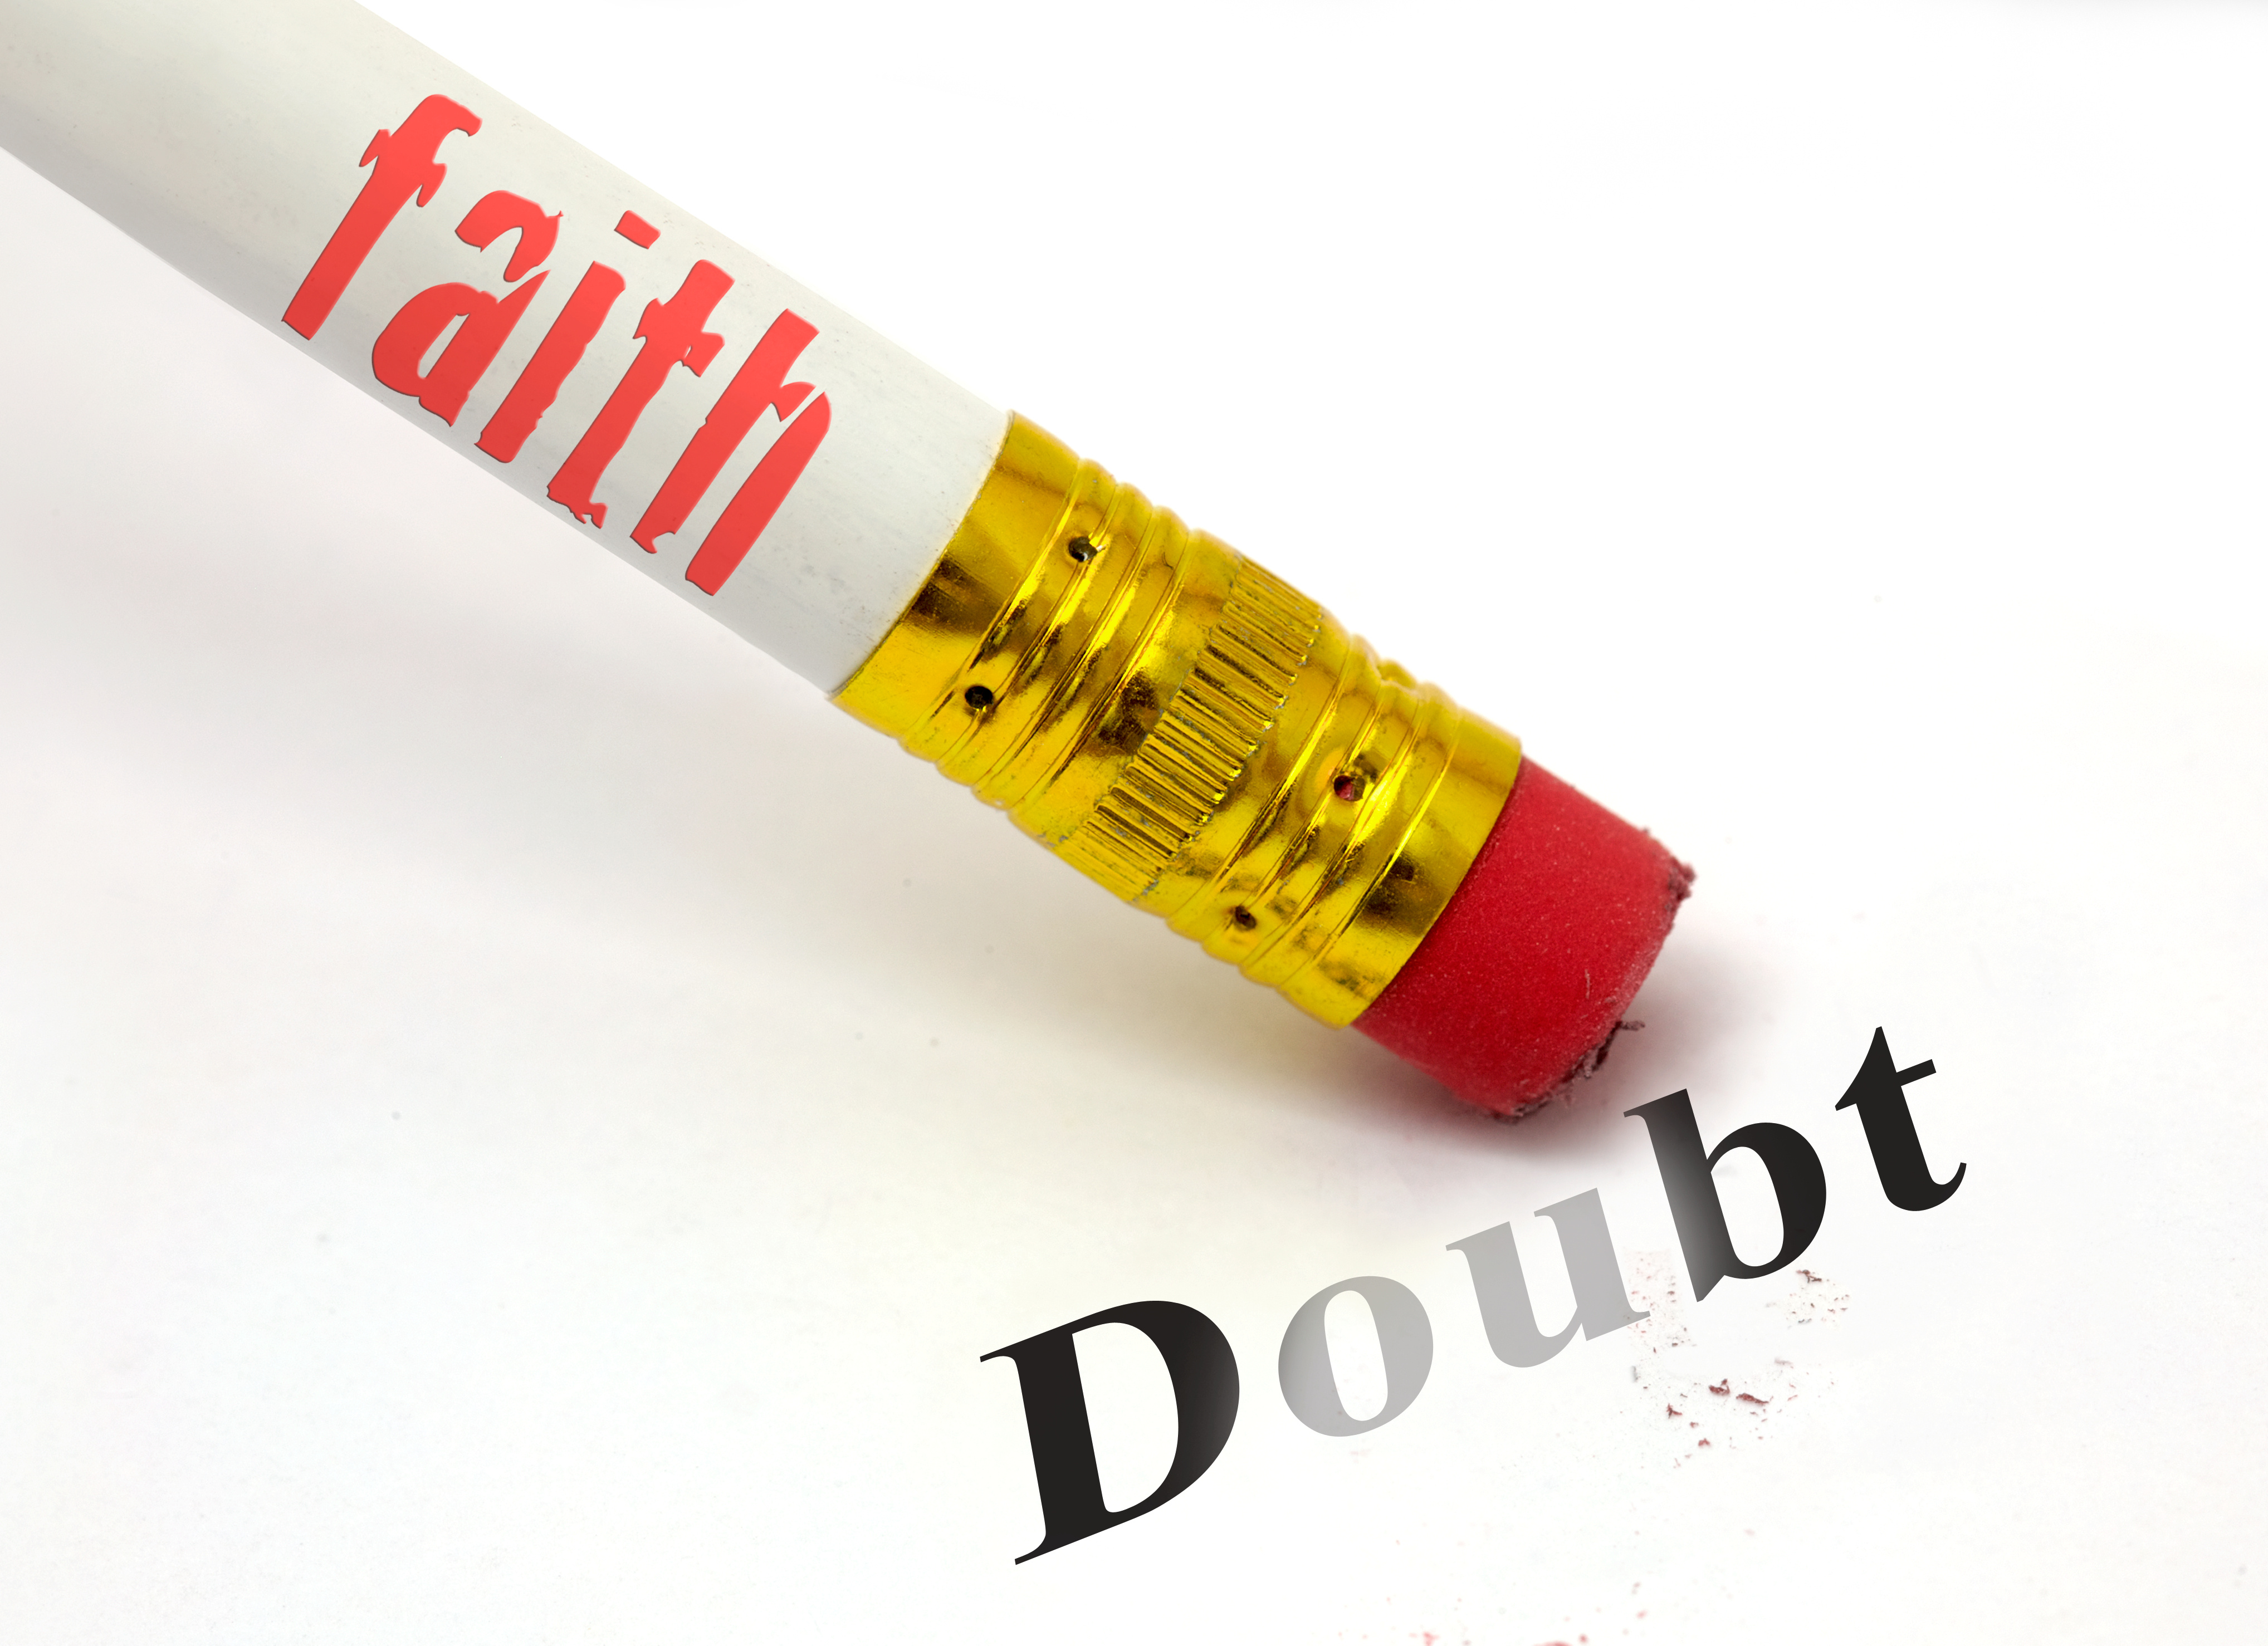 faith erases doubt